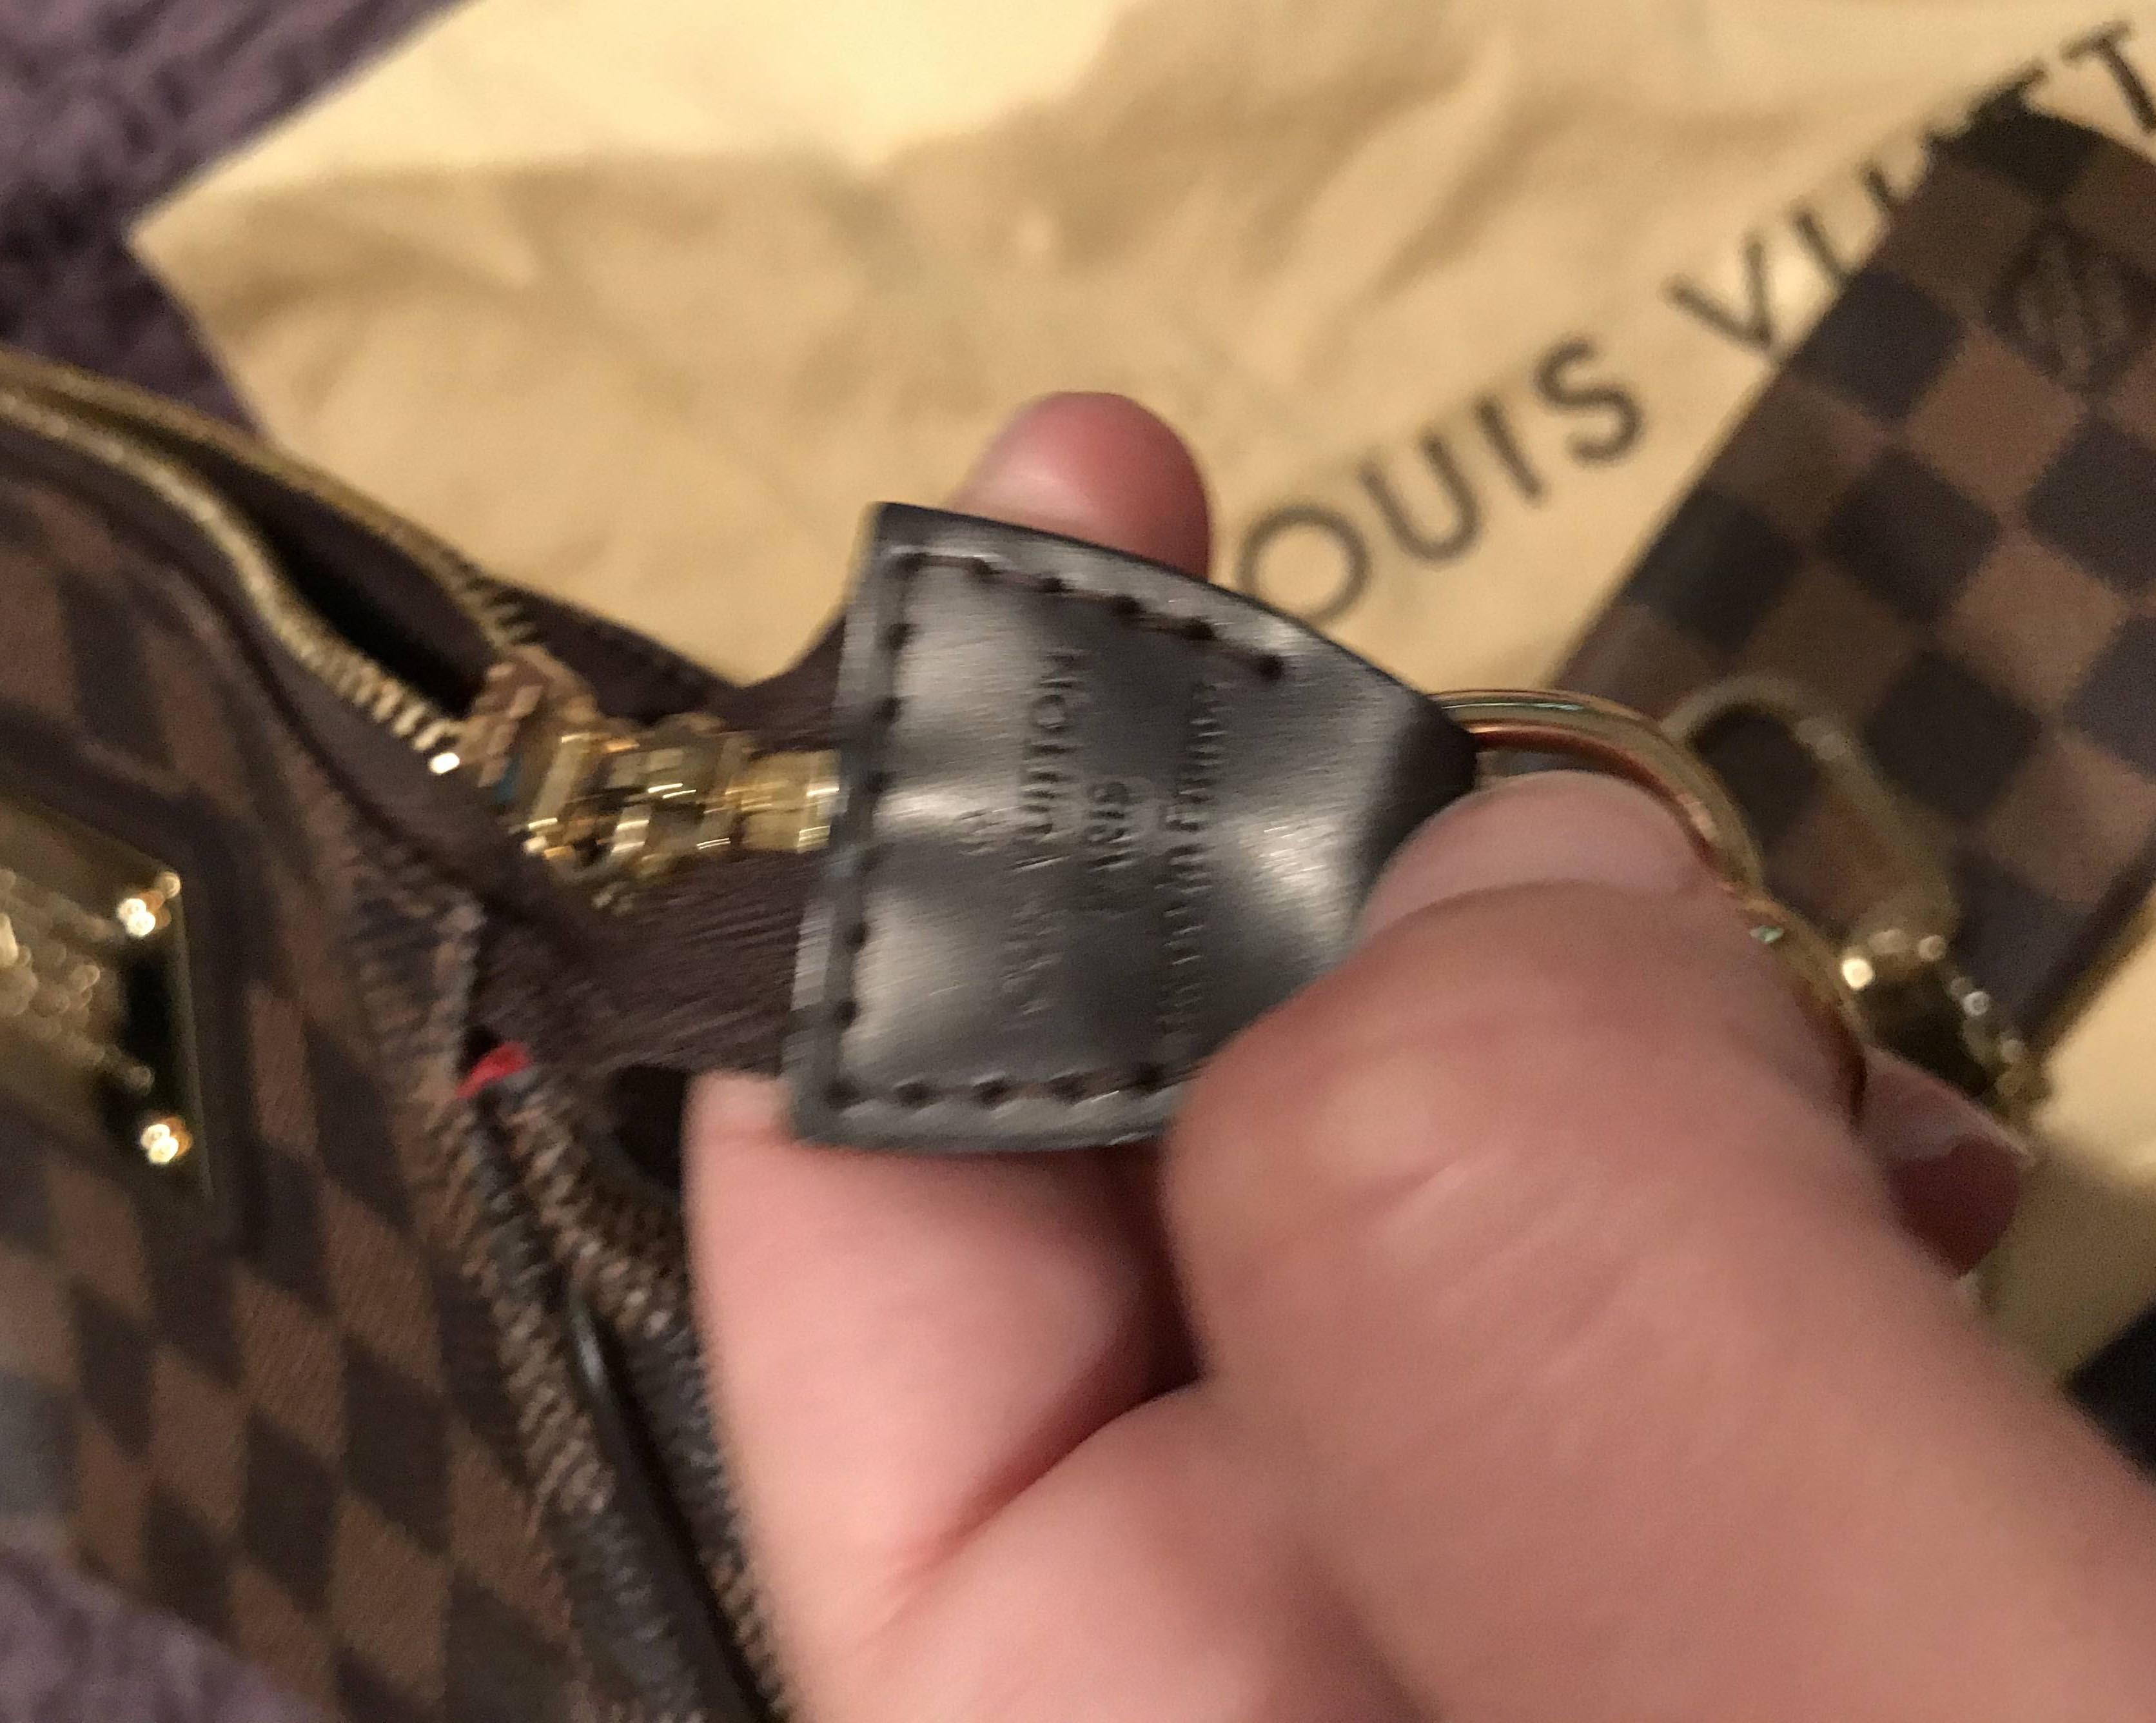 Brown Louis Vuitton Damier Ebene Pochette Trousse Handbag – Designer Revival